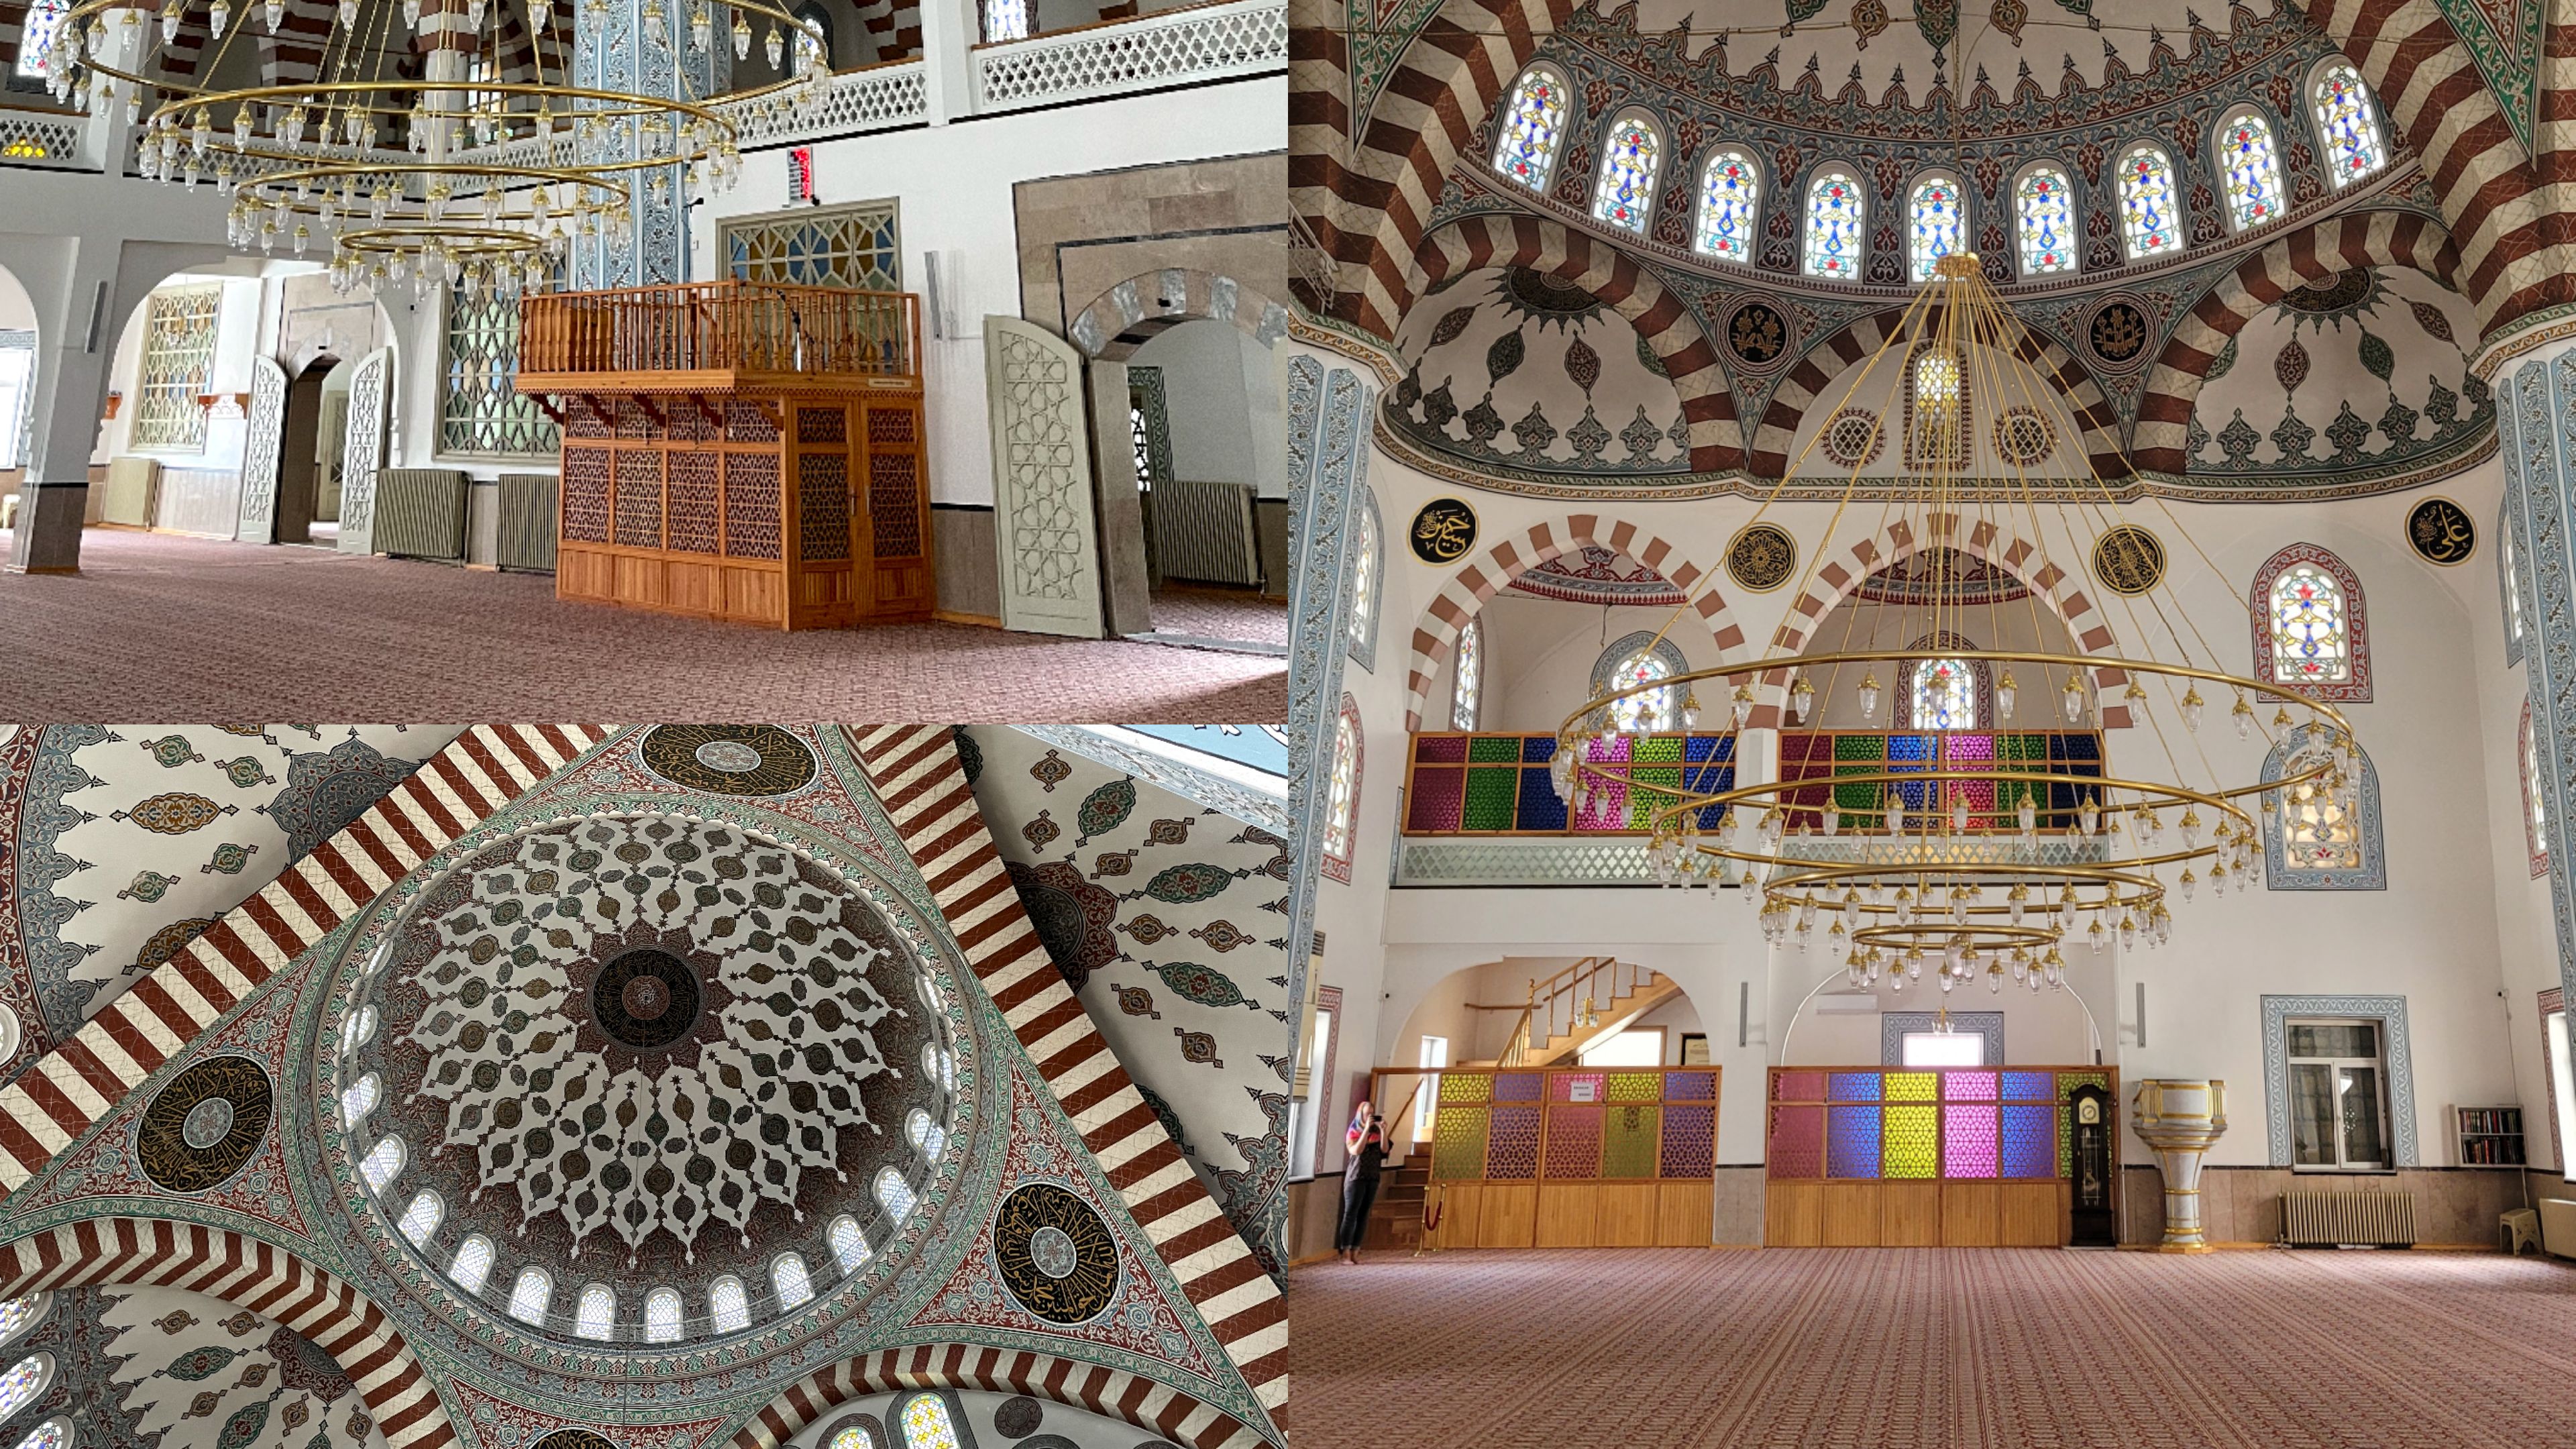 La somptueuse mosquée Pasa Camii